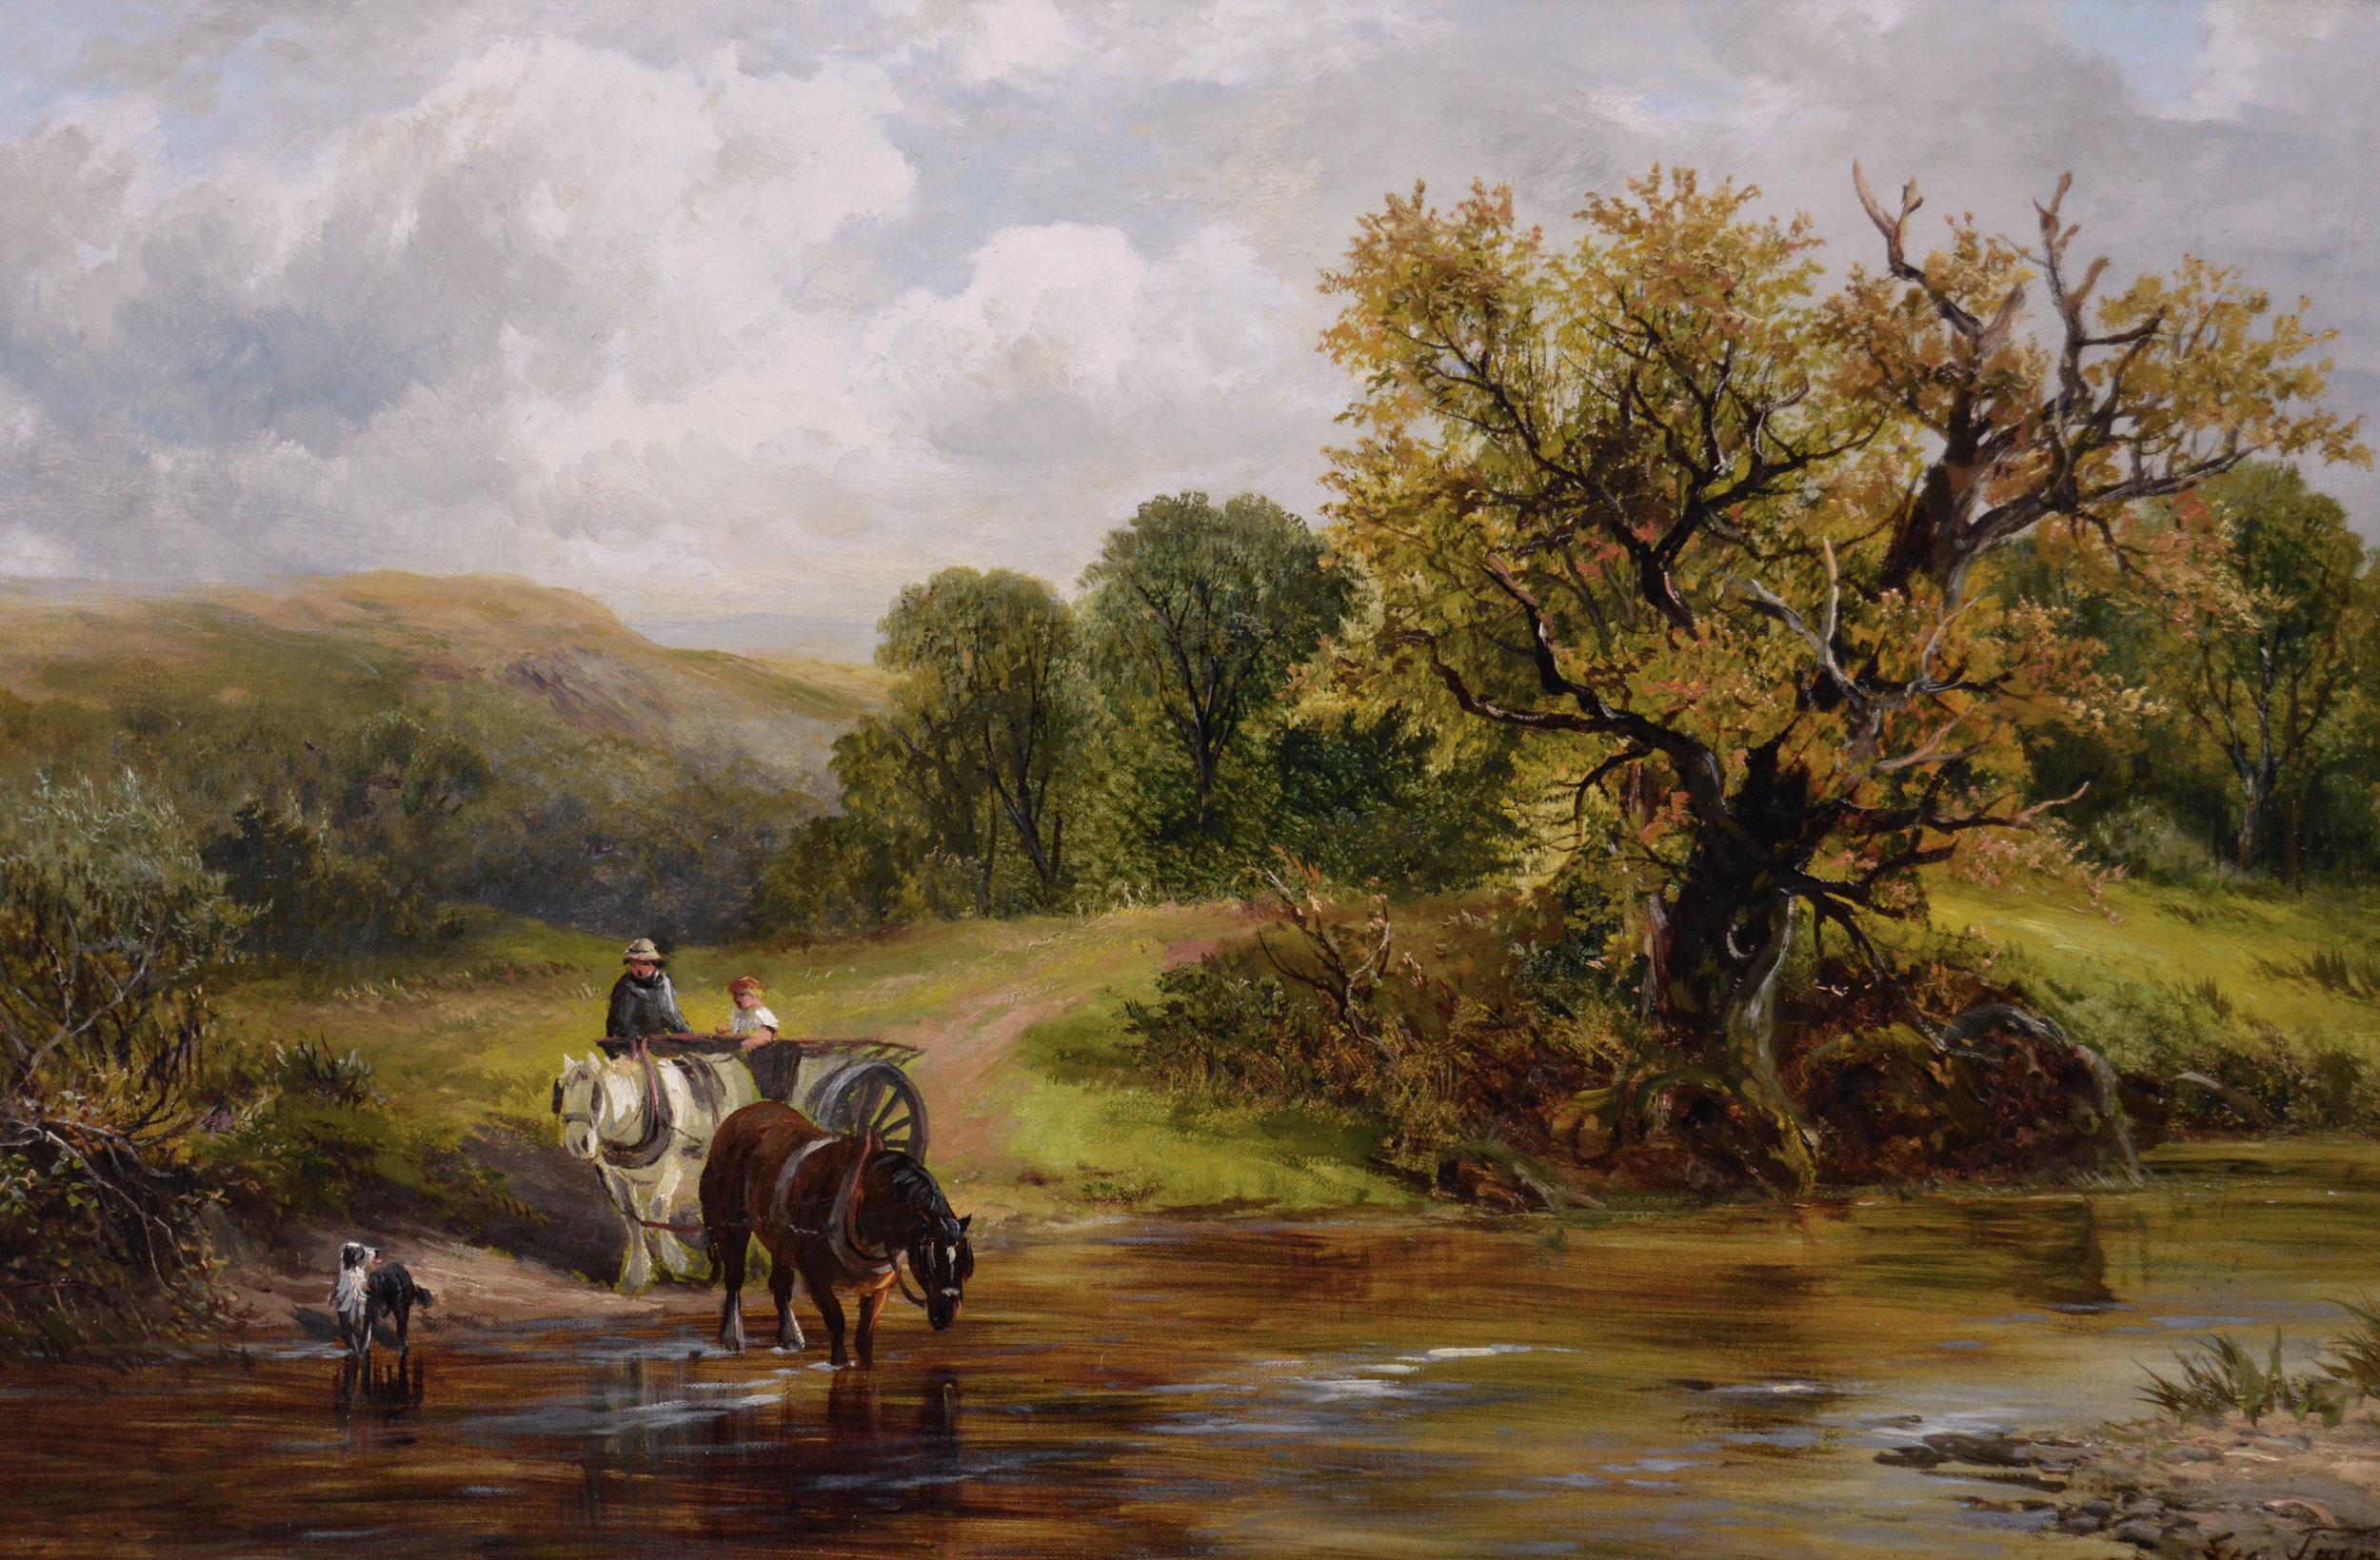 Peinture à l'huile du 19e siècle représentant des personnages avec un cheval et un chariot franchissant un gué - Painting de George Turner